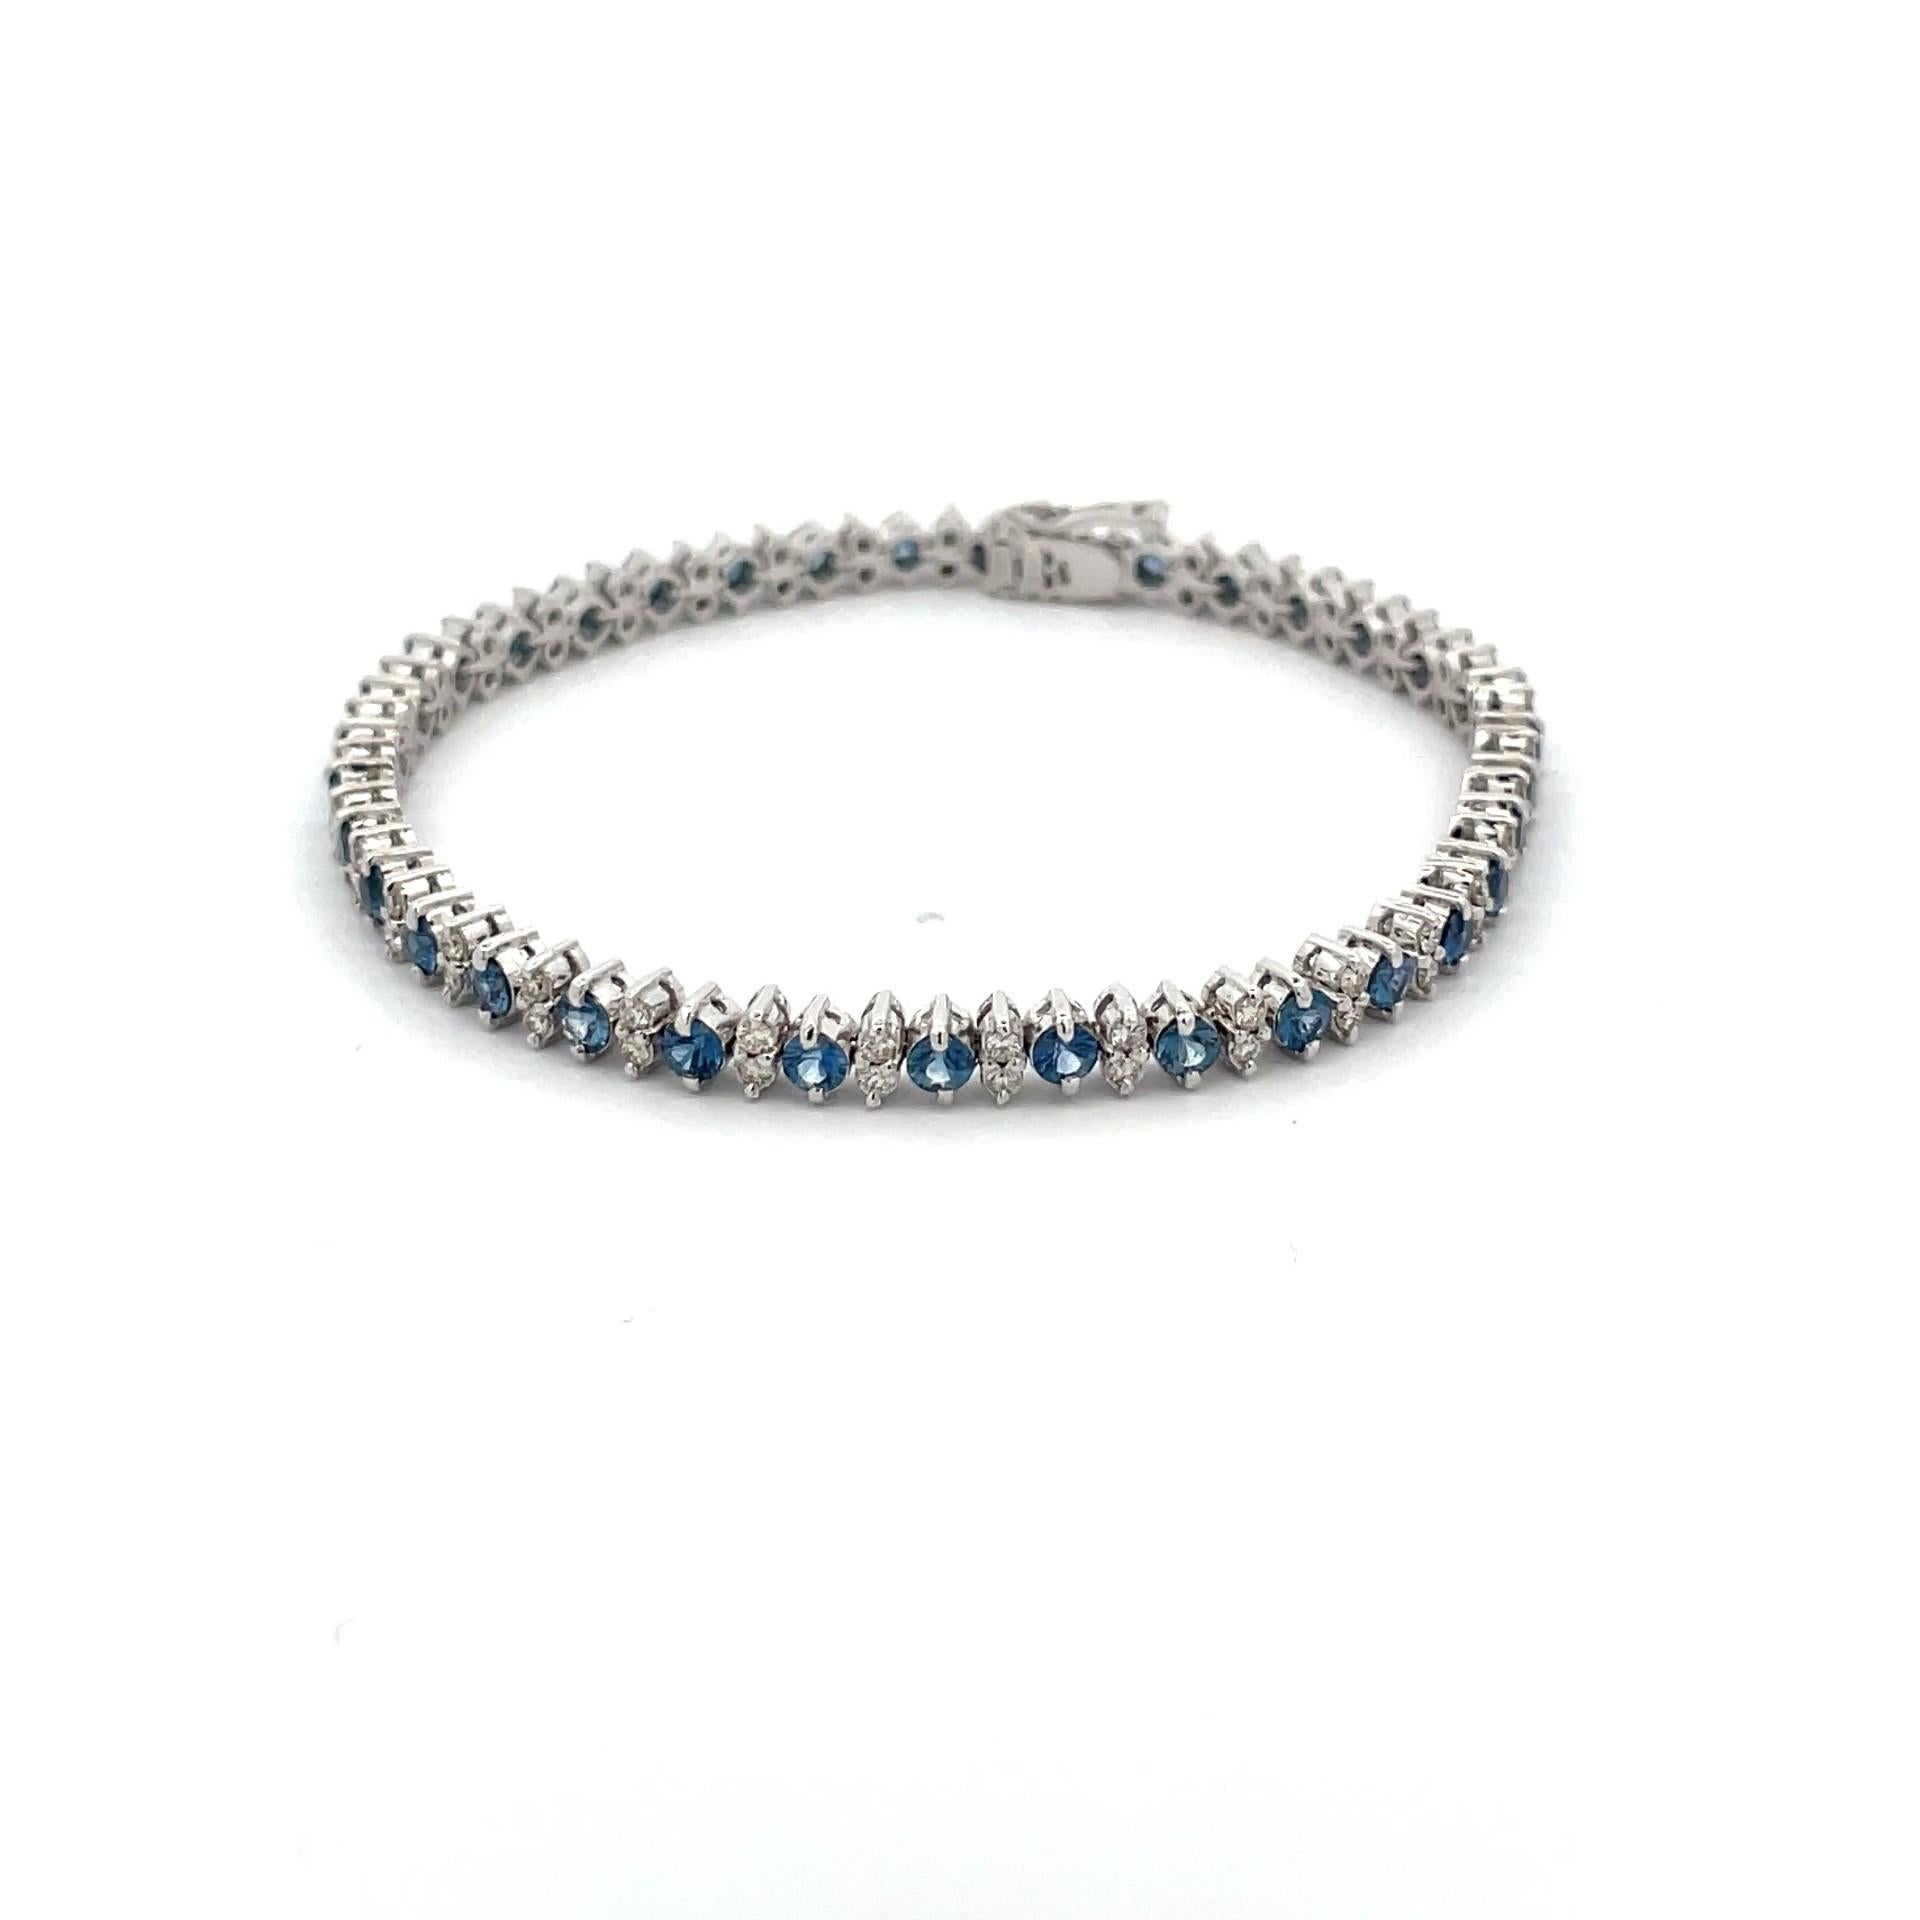 Bracelet alternatif en saphir bleu naturel et diamant taille brillant (en forme de marquis) en or blanc 18kt. La combinaison des couleurs des diamants et des saphirs est absolument magnifique.

35 saphirs bleus naturels d'un poids total de